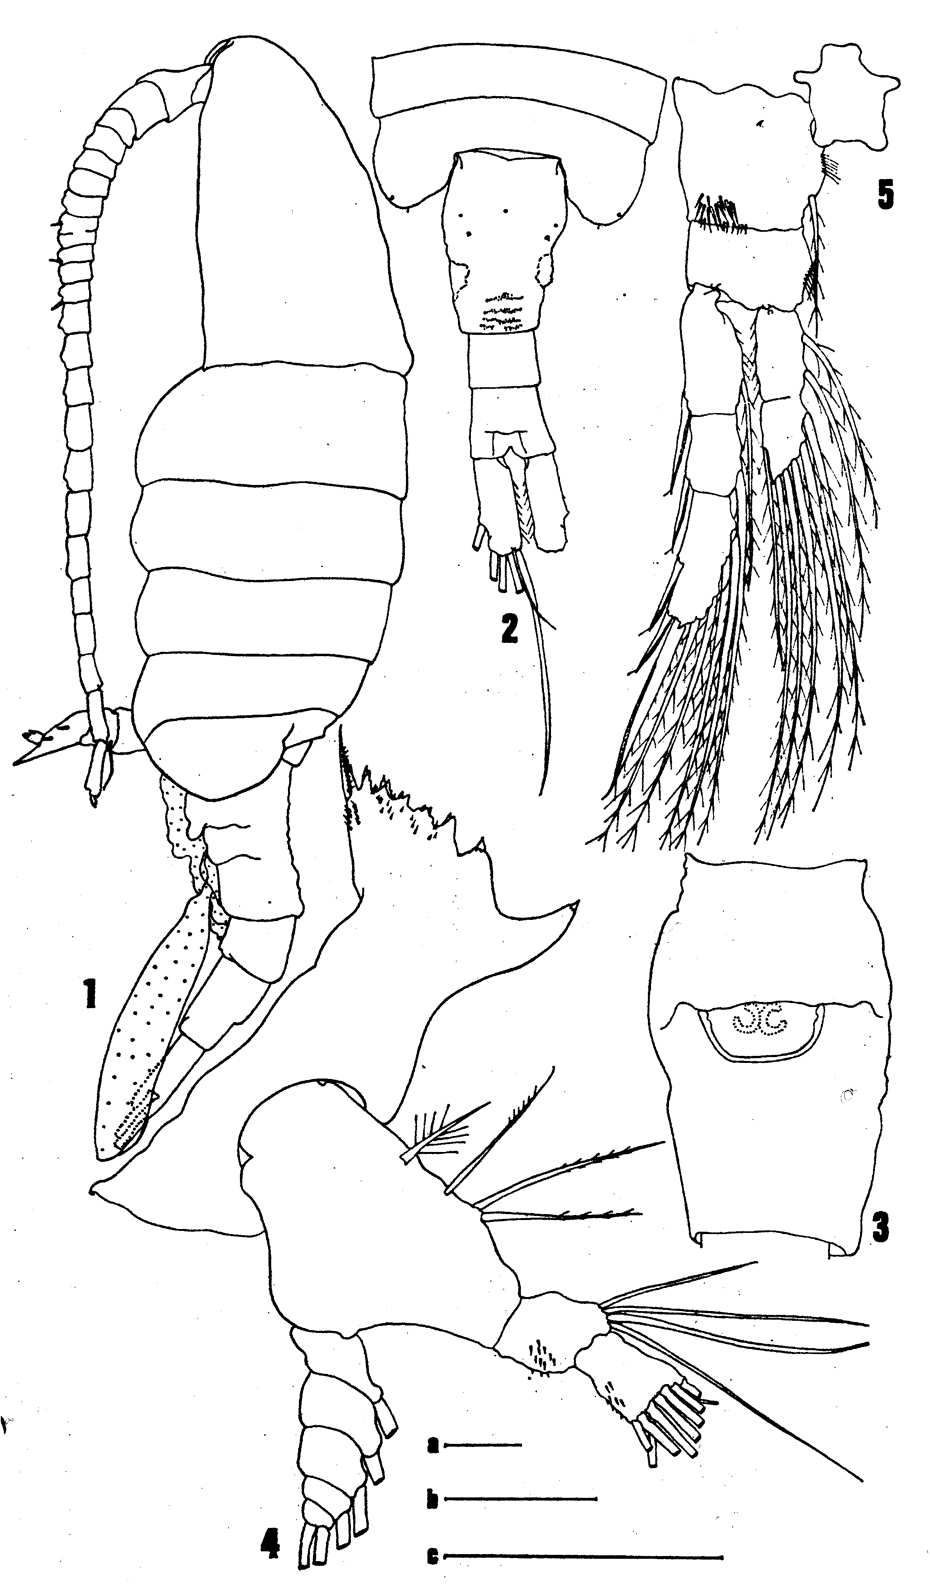 Species Eurytemora richingsi - Plate 1 of morphological figures